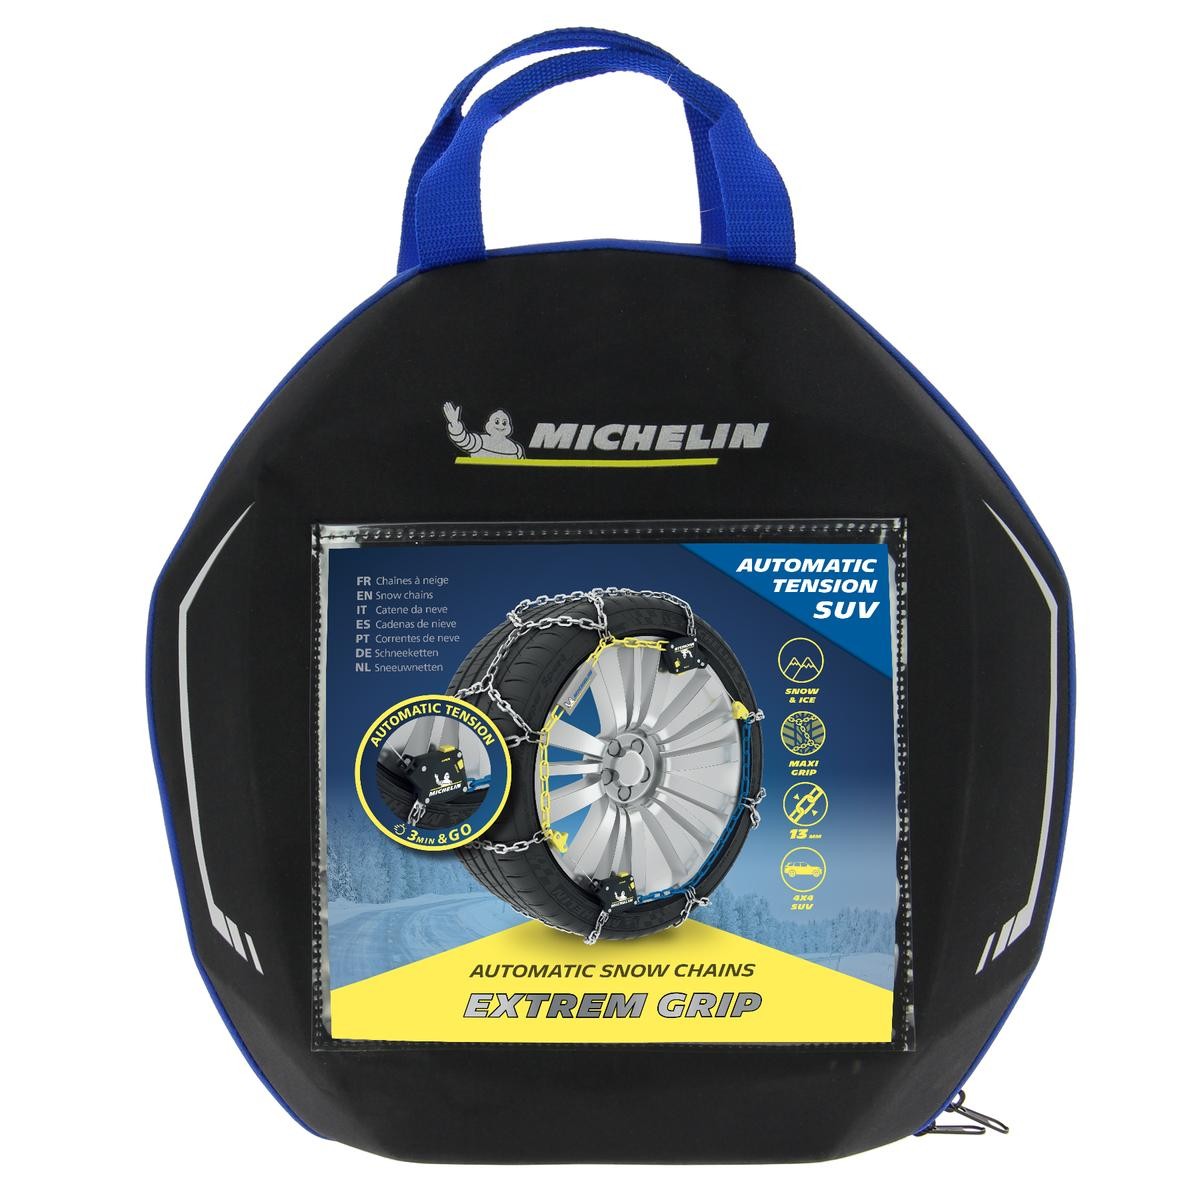 008466 Michelin Extrem Grip Auto 260 008466 Cadenas para nieve con bolsa de almacenamiento, con guantes de protección, con instrucciones de montaje, Bolsa AUTODOC precio y opinión